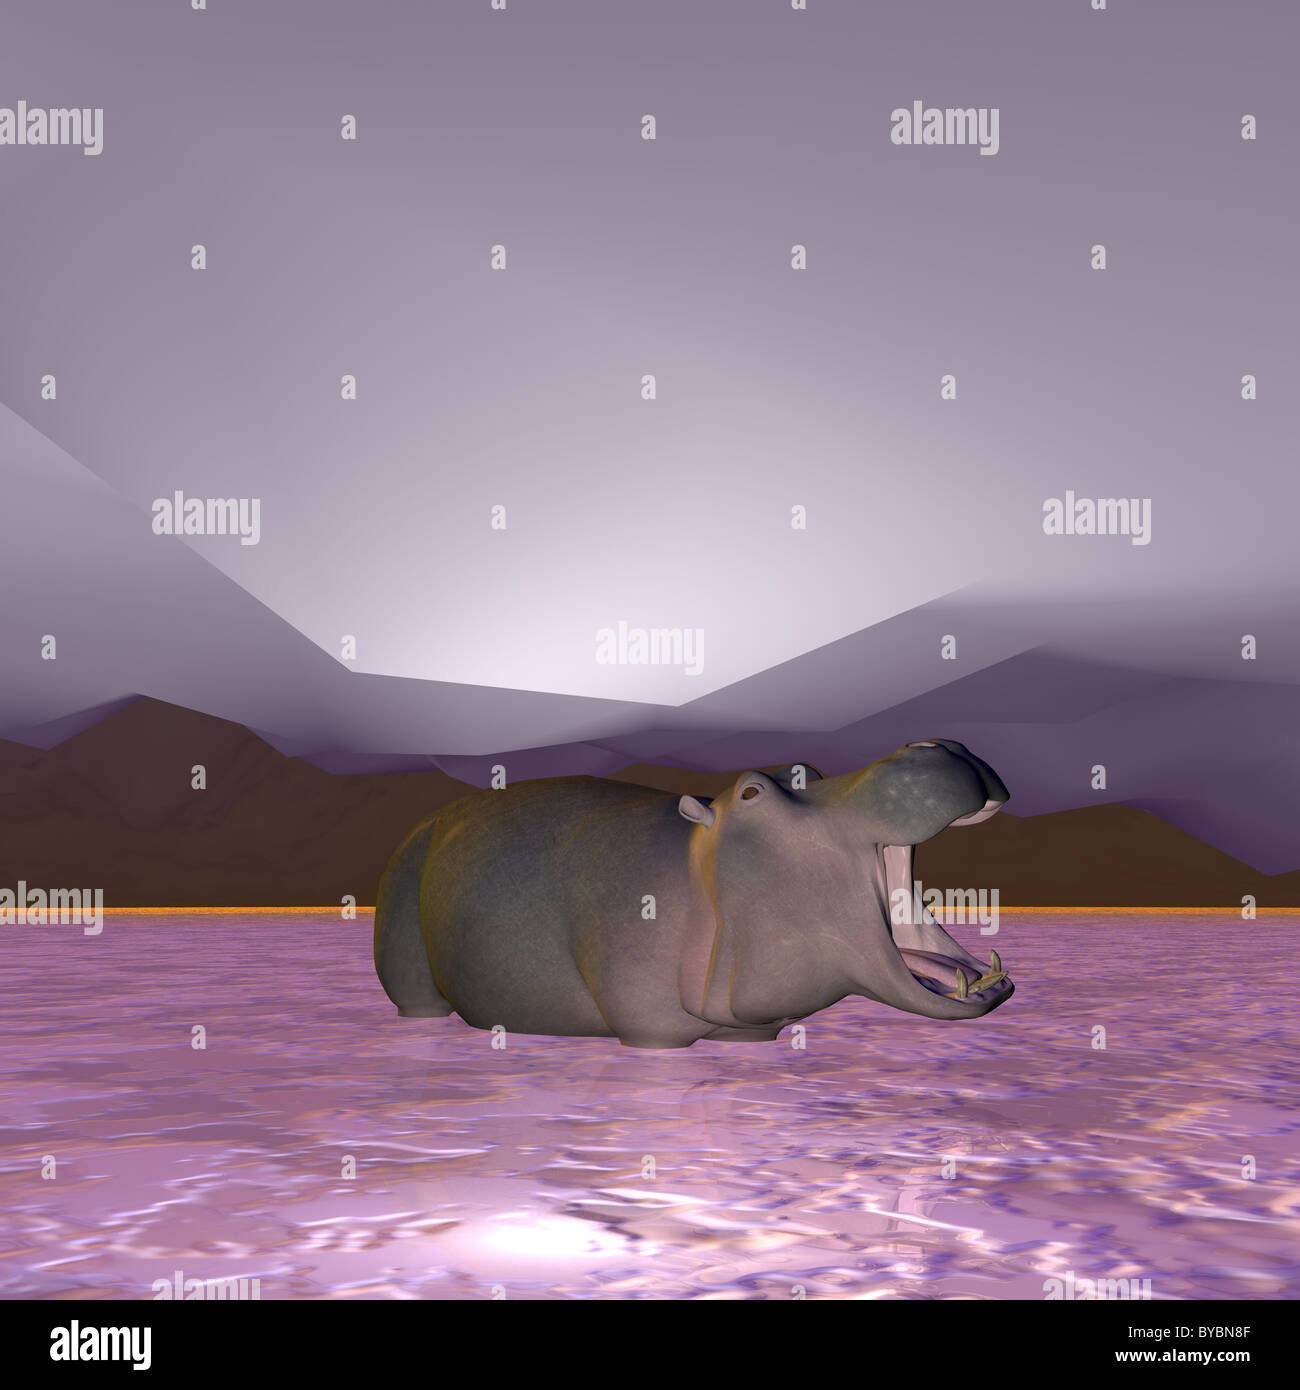 Illustration d'un hippopotame dans une rivière gelée Banque D'Images